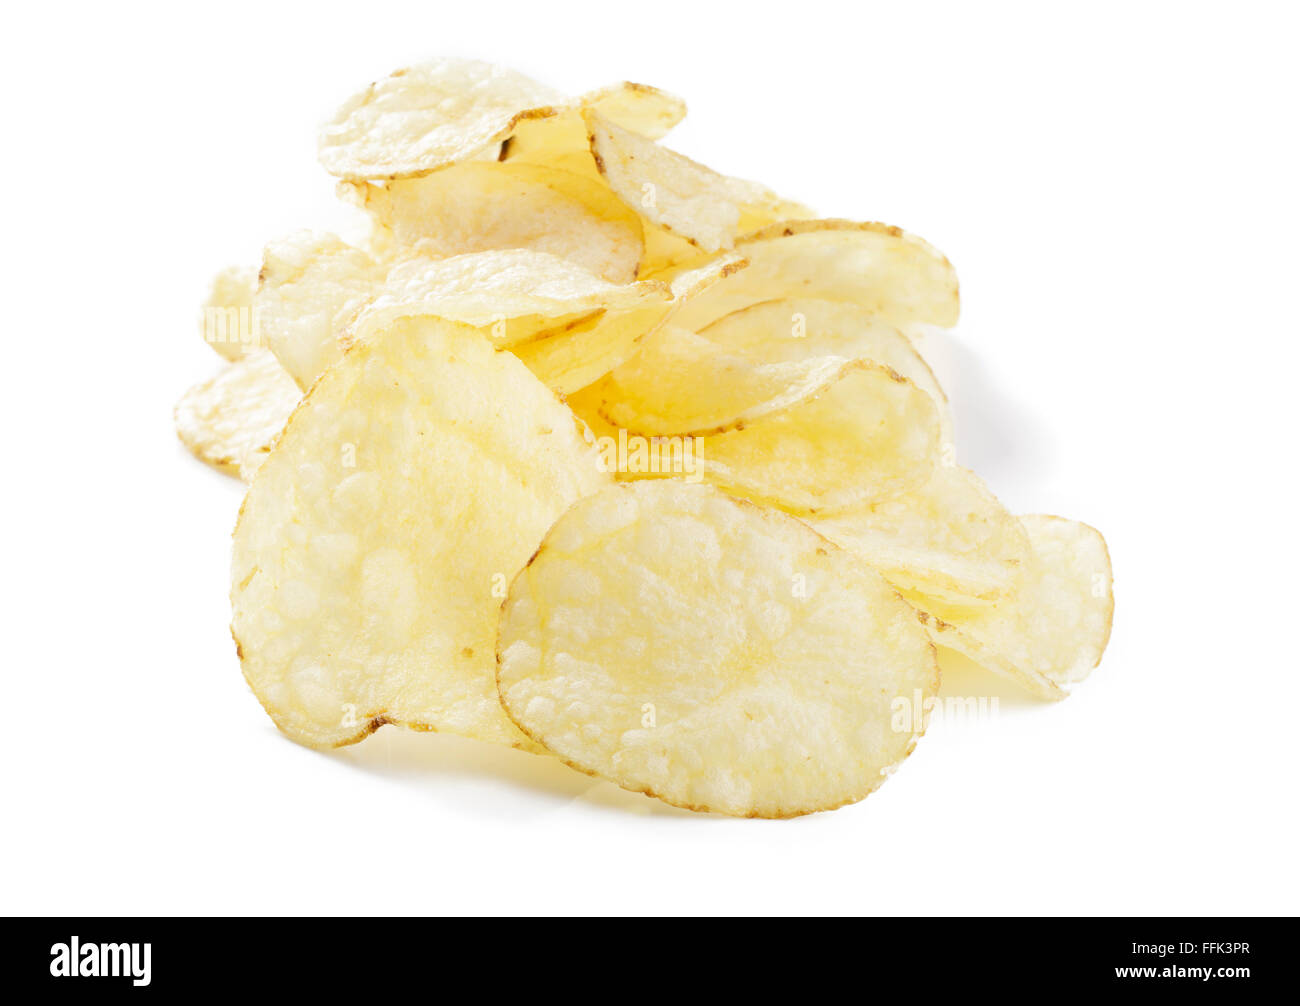 Potato crisps / potato chips Stock Photo